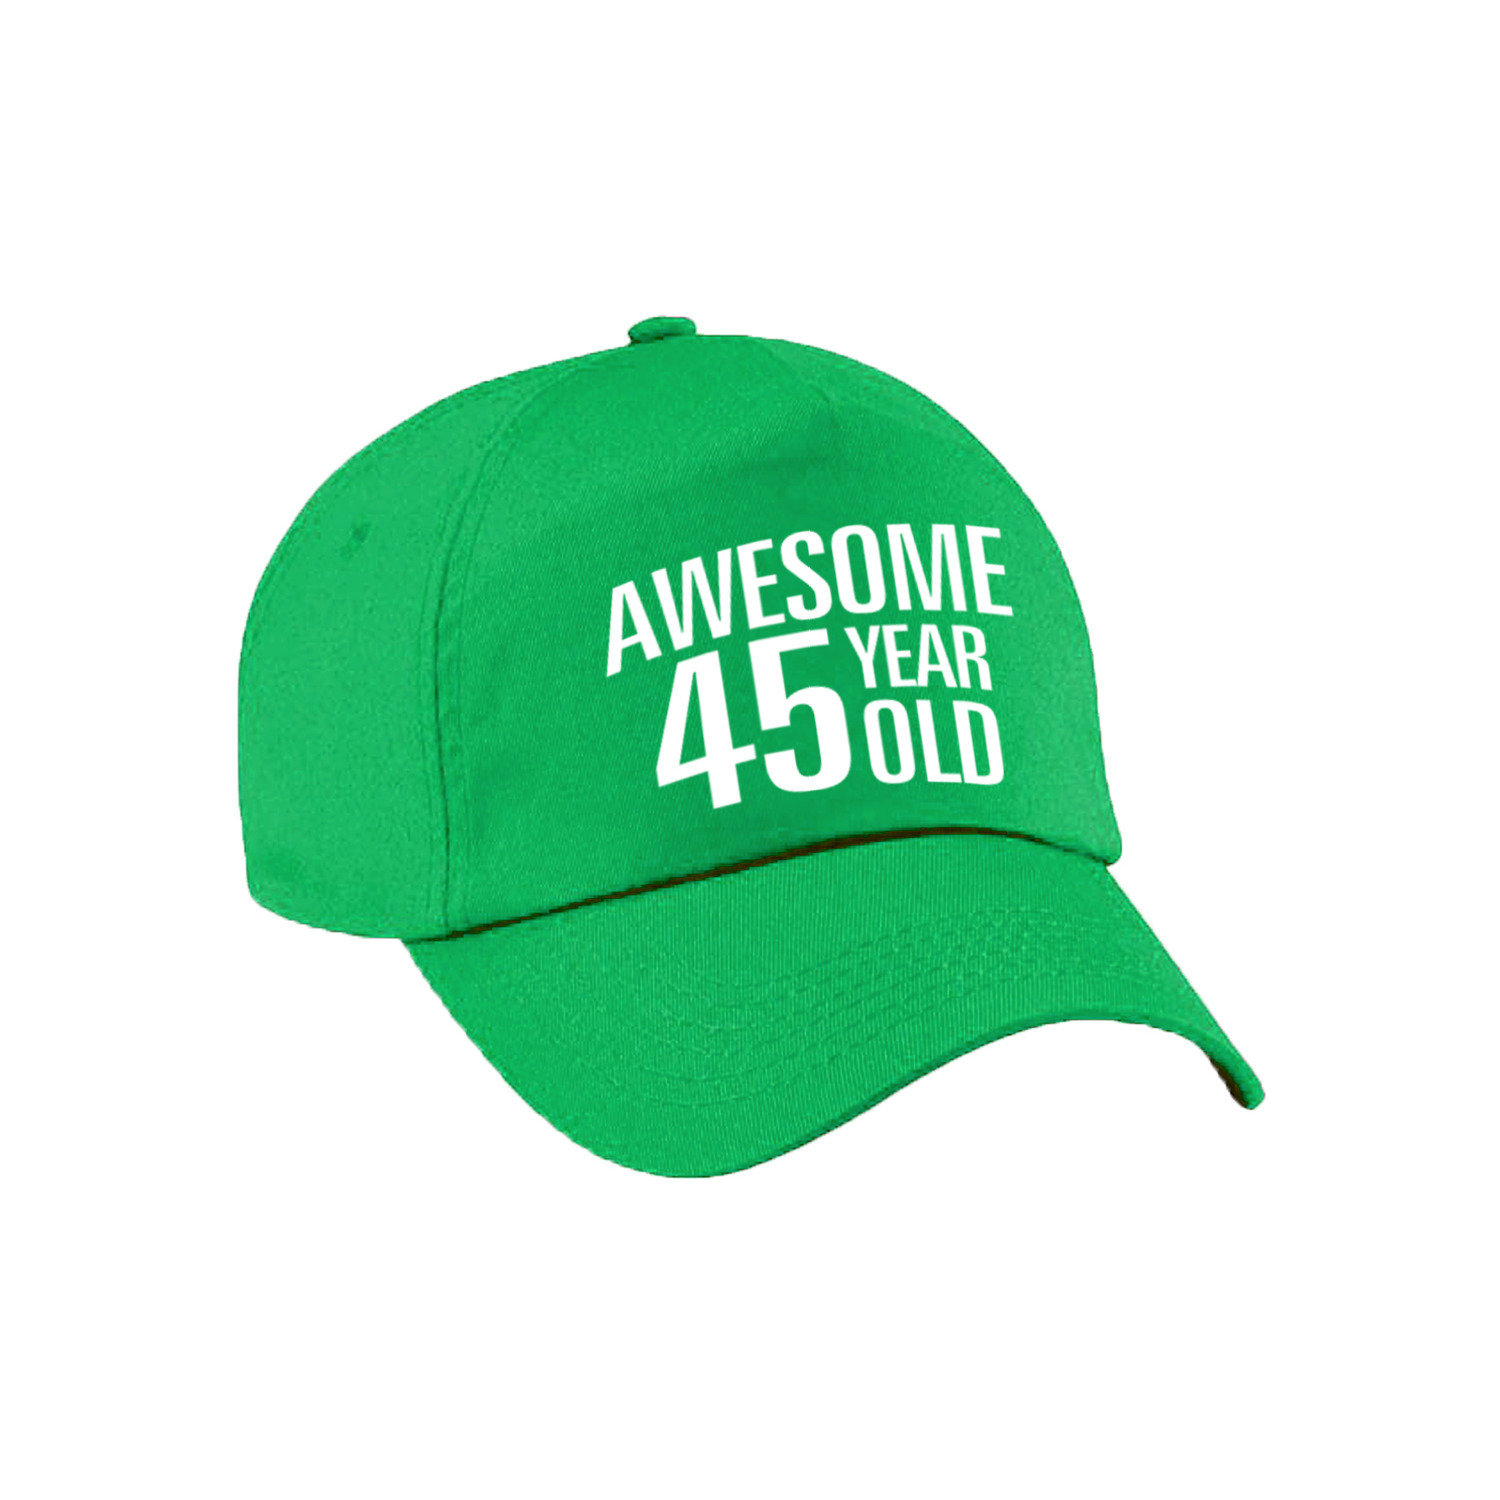 Awesome 45 year old verjaardag pet - cap groen voor dames en heren